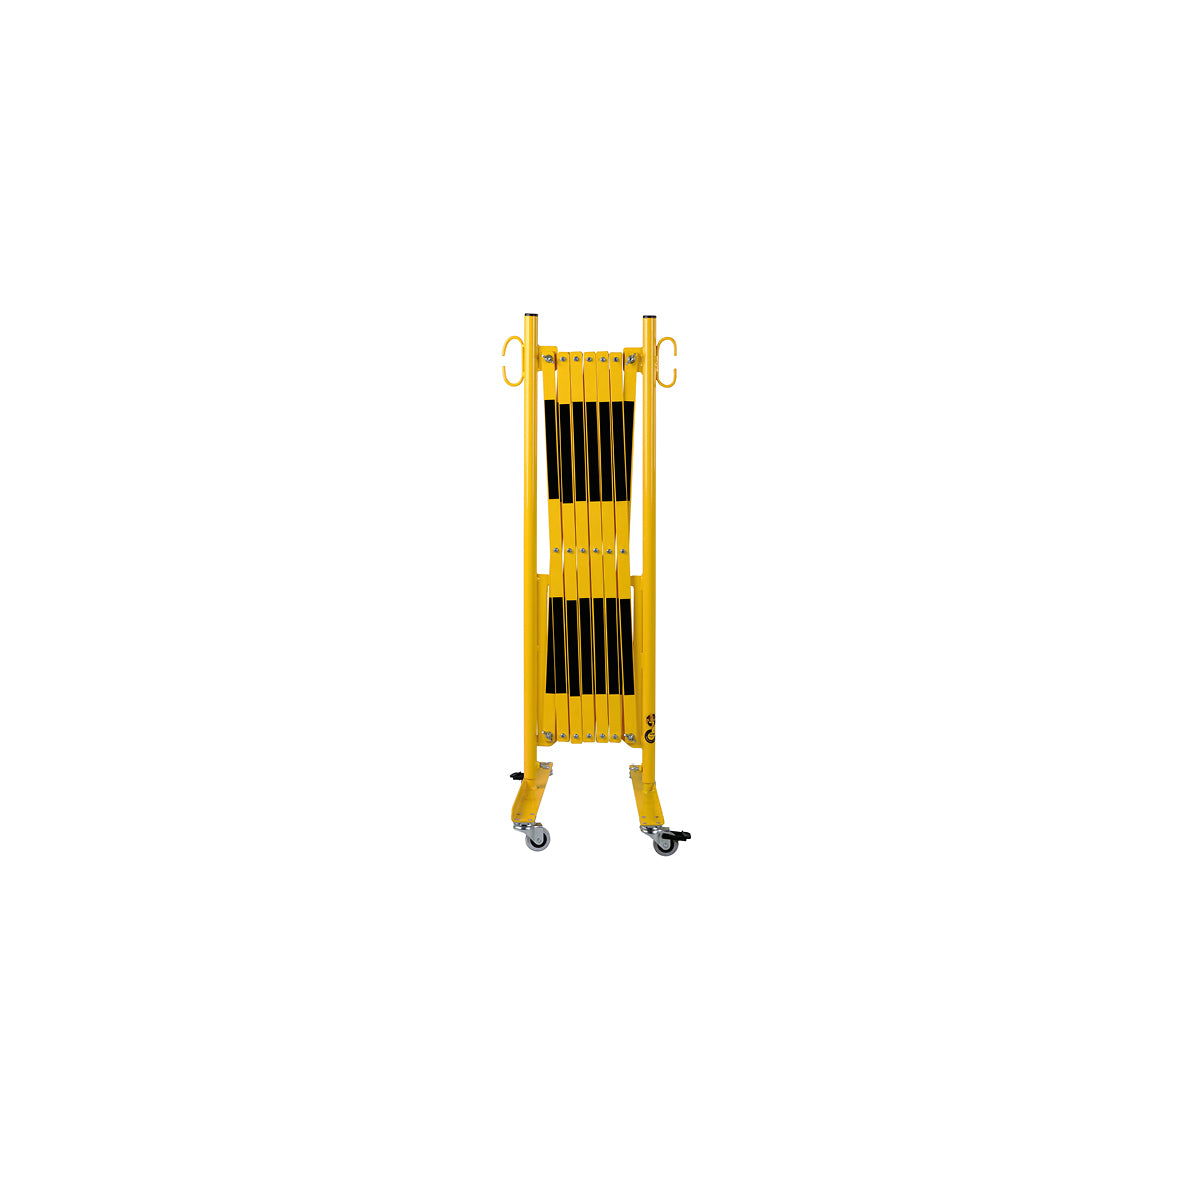 Scherensperre mit Rollen, Stahl, gelb-schwarz lackiert, Max. Breite 4.0 m. Gewicht: 17.5 kg, B/H/T: 460 x 950 x 450 mm, zusammengeklappt